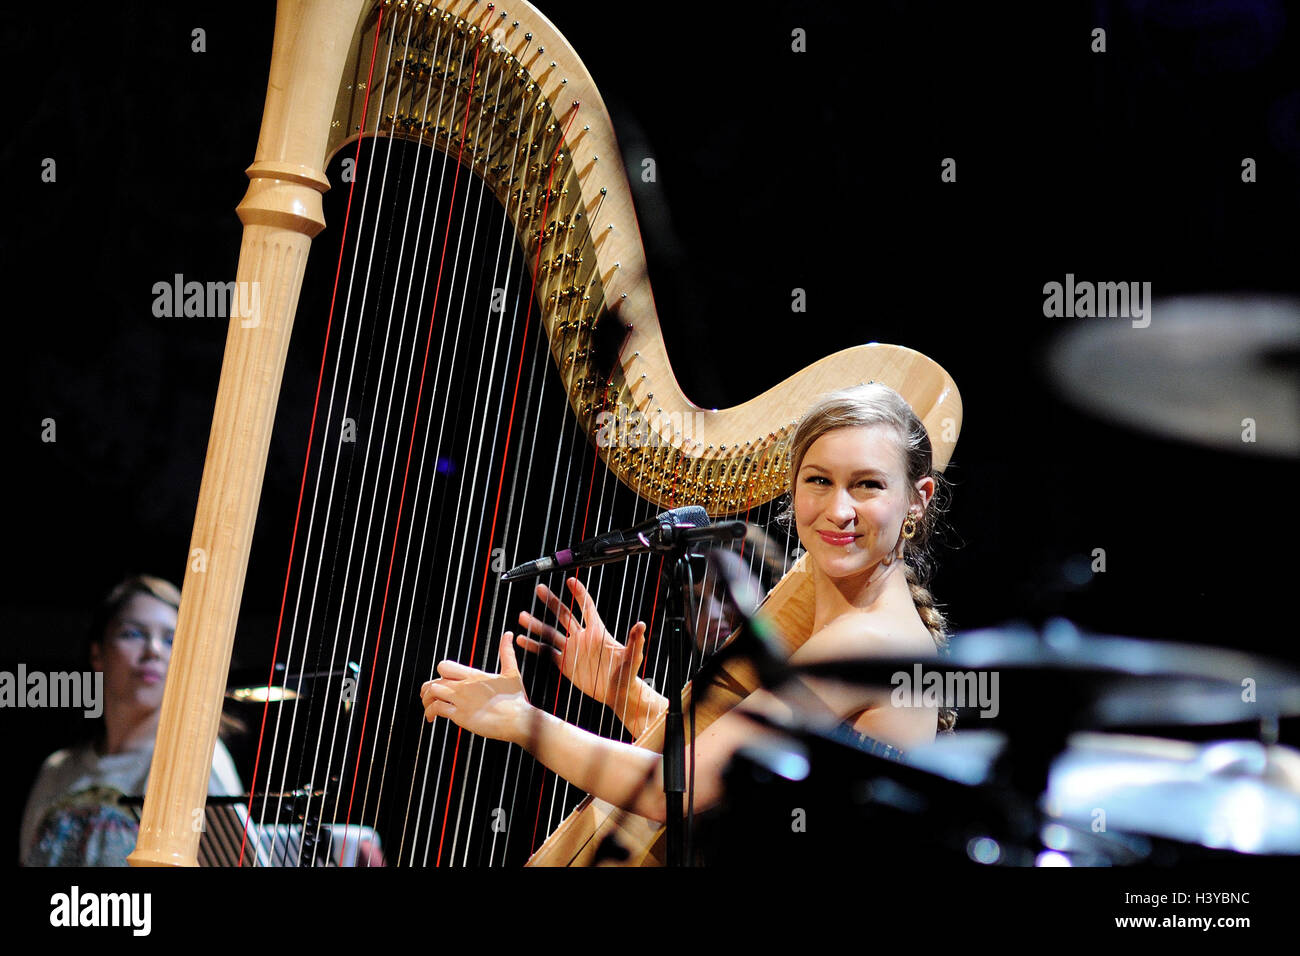 Barcelone - jan 20 : Joanna Newsom, harpiste et chanteuse, effectue au Palau de la Musica Catalana. Banque D'Images